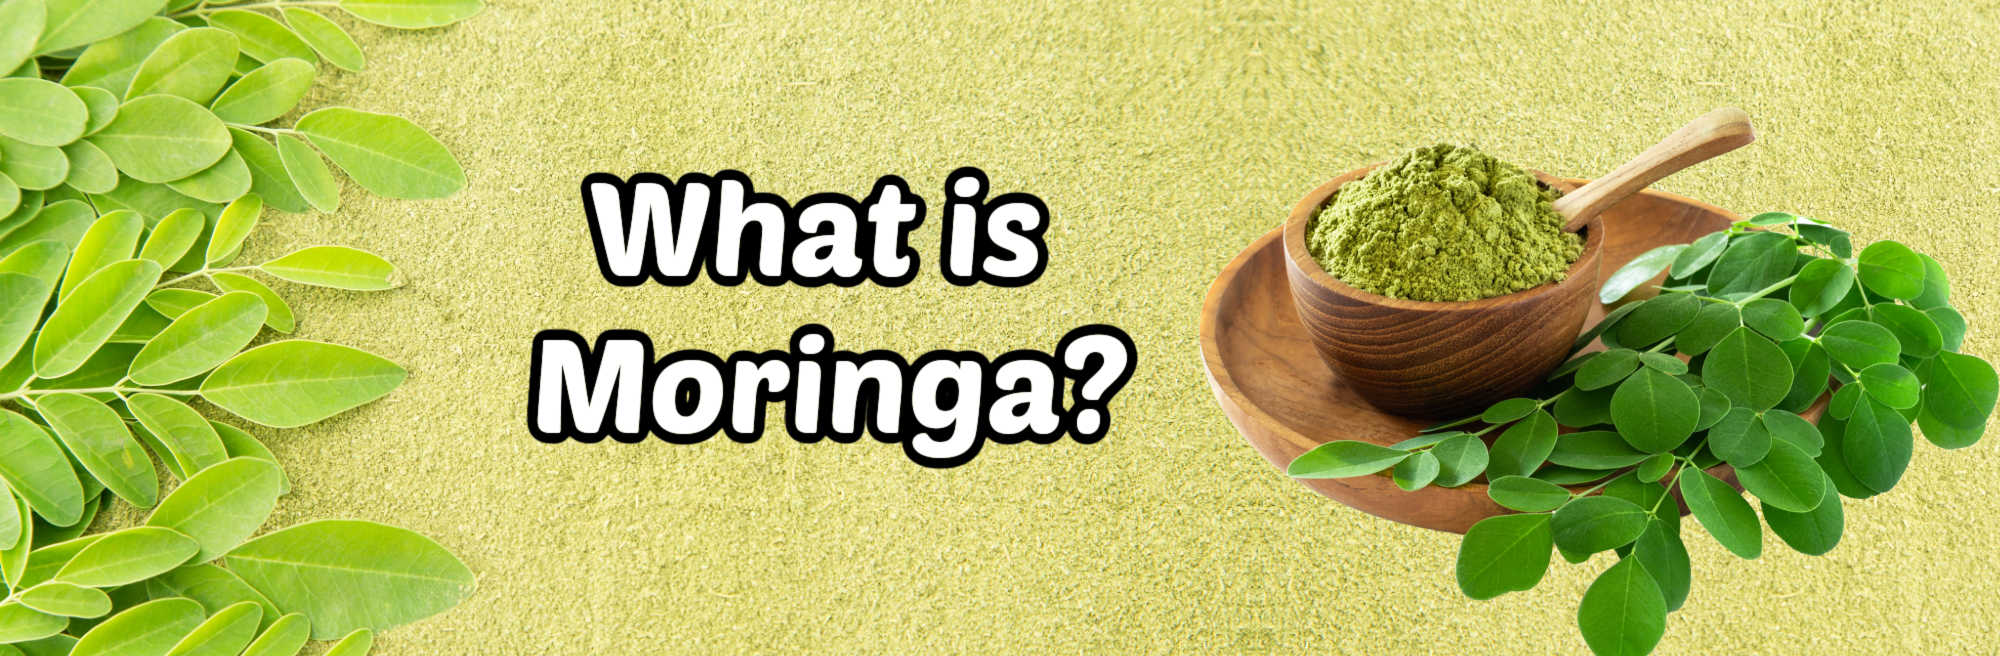 image of moringa